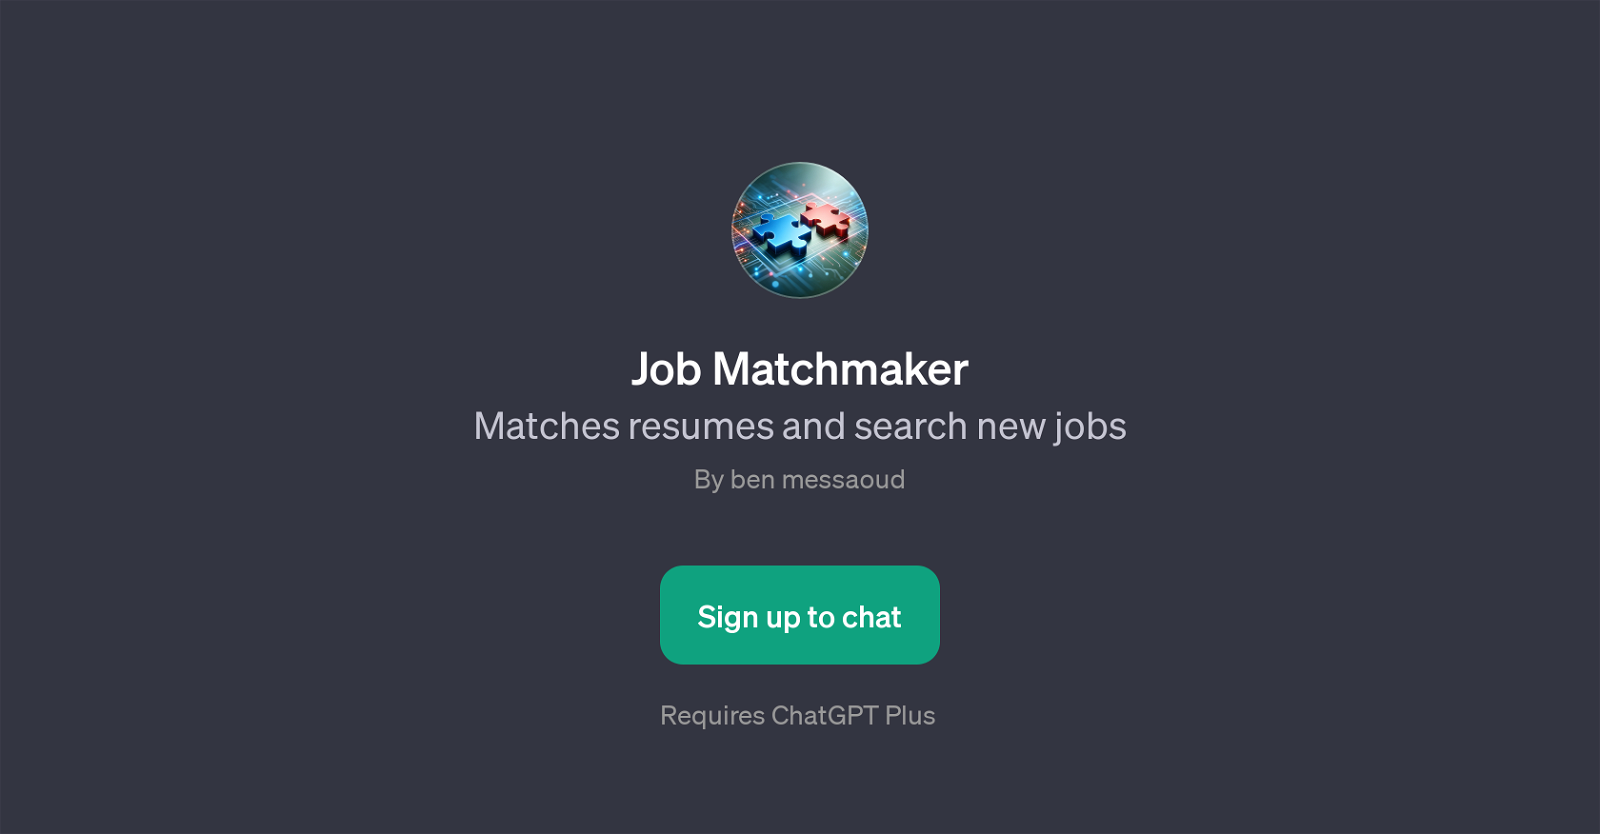 Job Matchmaker website